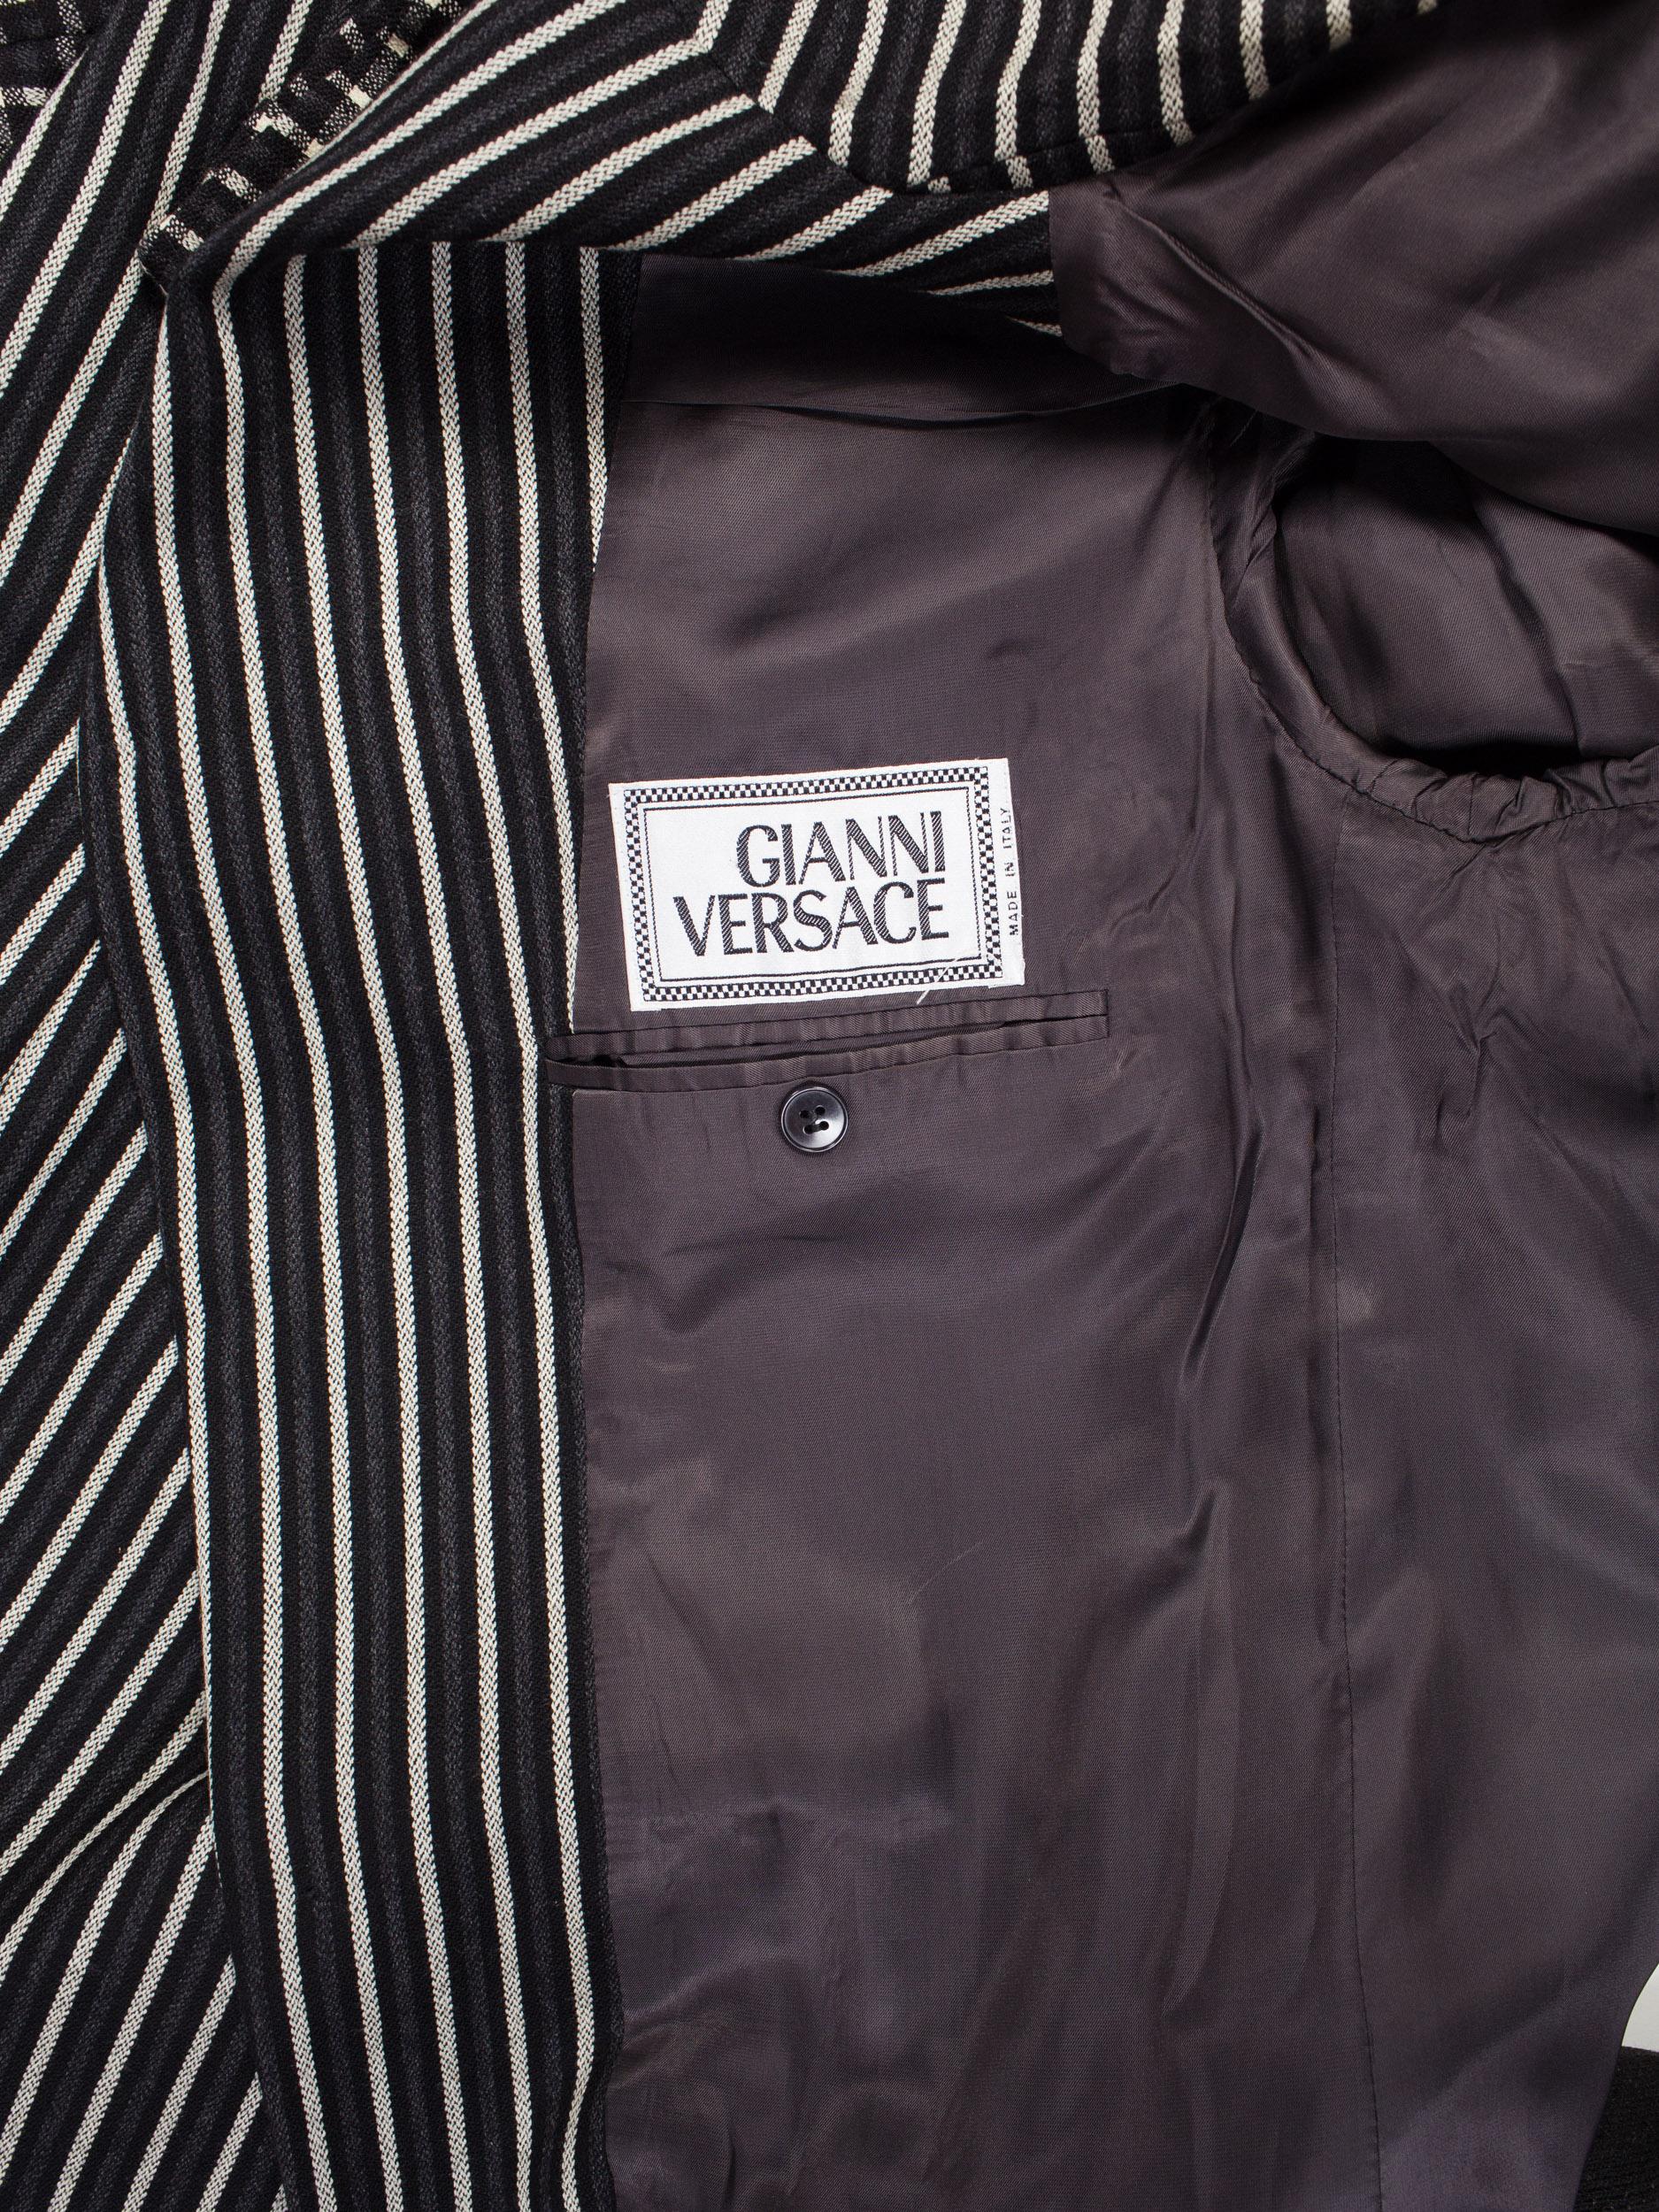 1990S GIANNI VERSACE Black, White & Grey Wool Check Plaid Striped Weiner Werksta For Sale 2